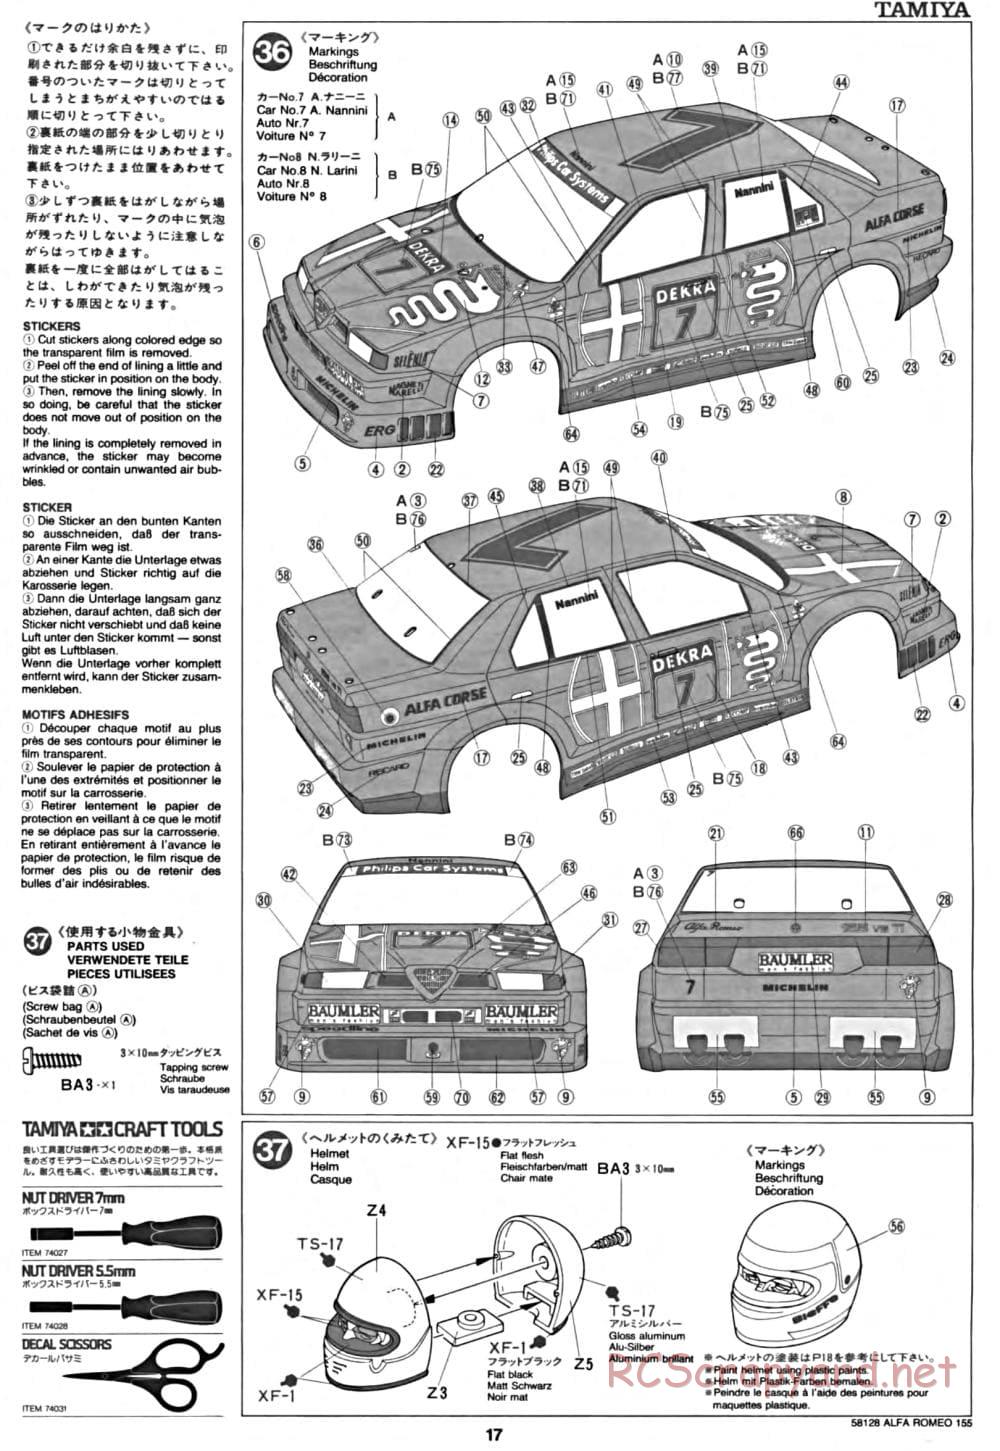 Tamiya - Alfa Romeo 155 V6 TI - TA-02 Chassis - Manual - Page 17